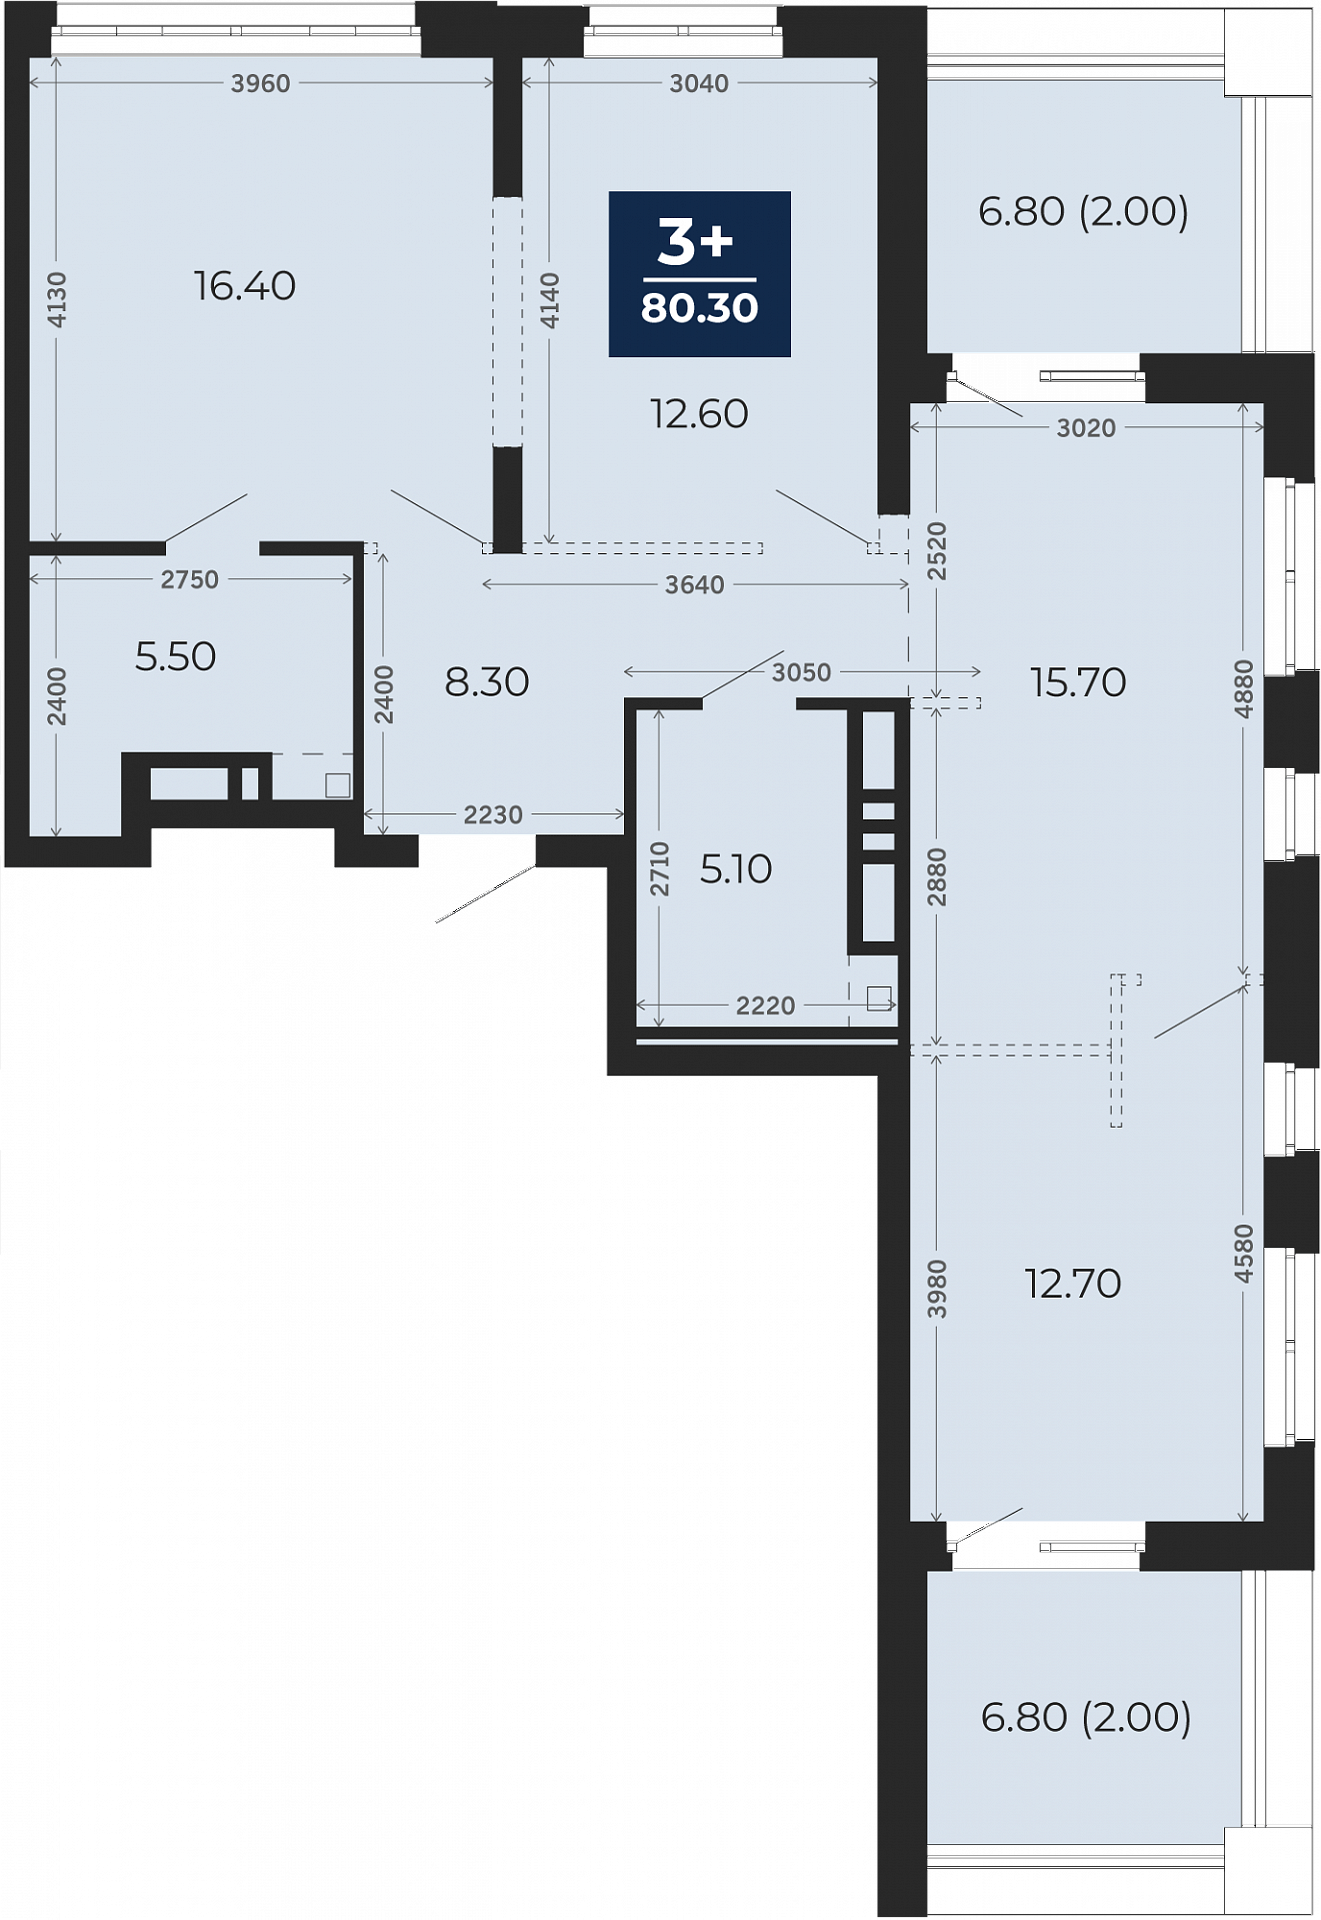 Квартира № 412, 3-комнатная, 80.3 кв. м, 13 этаж